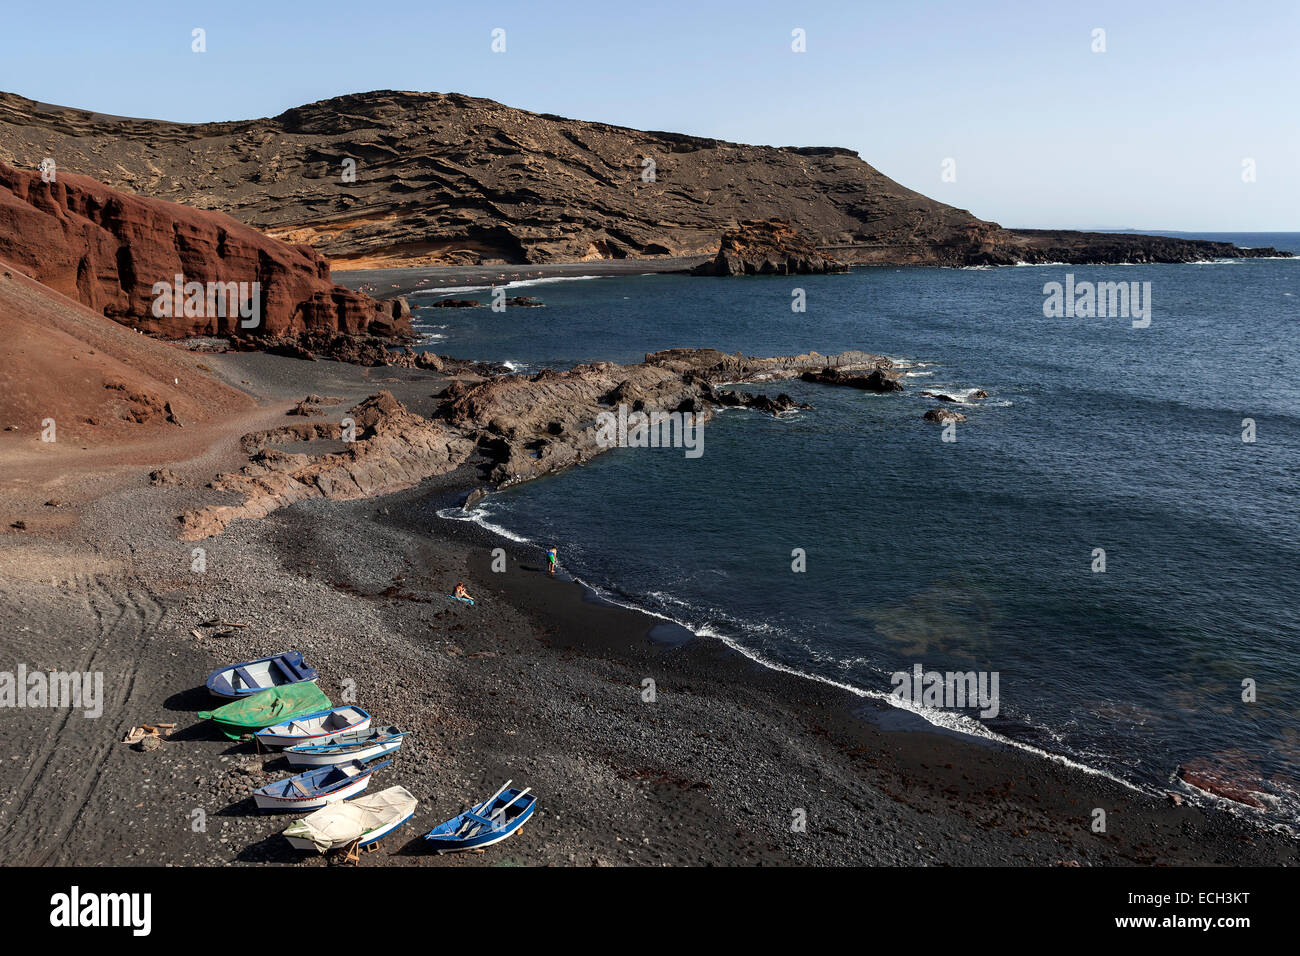 Angelboote/Fischerboote am schwarzen Strand von El Golfo, Vulkan Krater, Lanzarote, Kanarische Inseln, Spanien Stockfoto